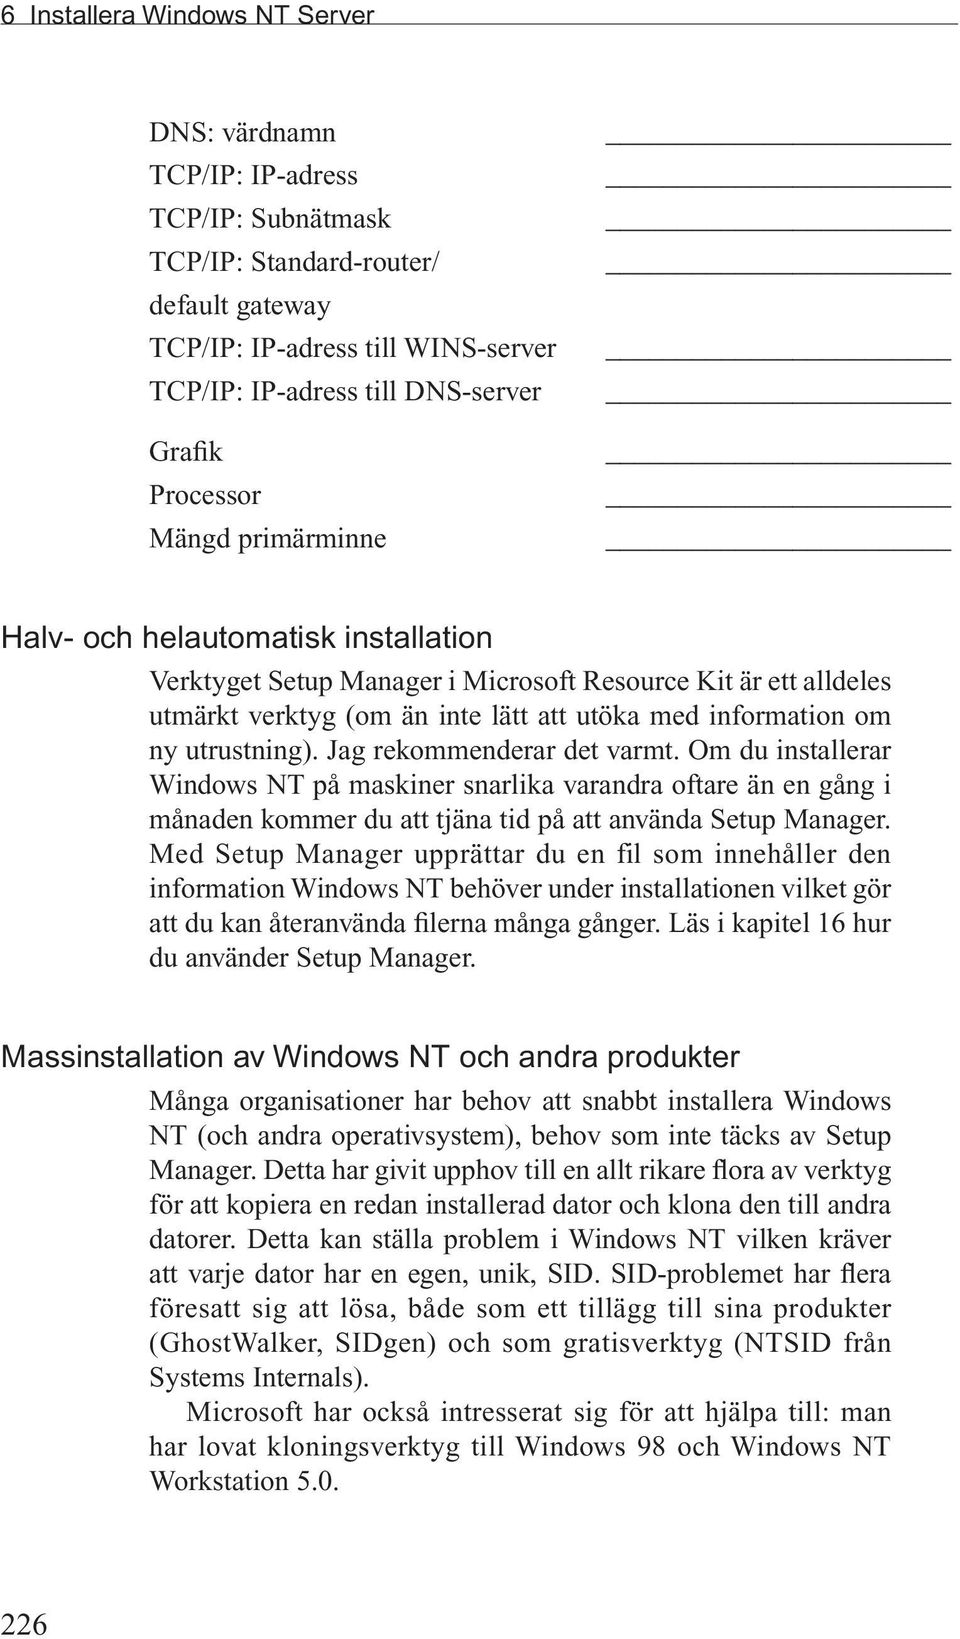 utrustning). Jag rekommenderar det varmt. Om du installerar Windows NT på maskiner snarlika varandra oftare än en gång i månaden kommer du att tjäna tid på att använda Setup Manager.